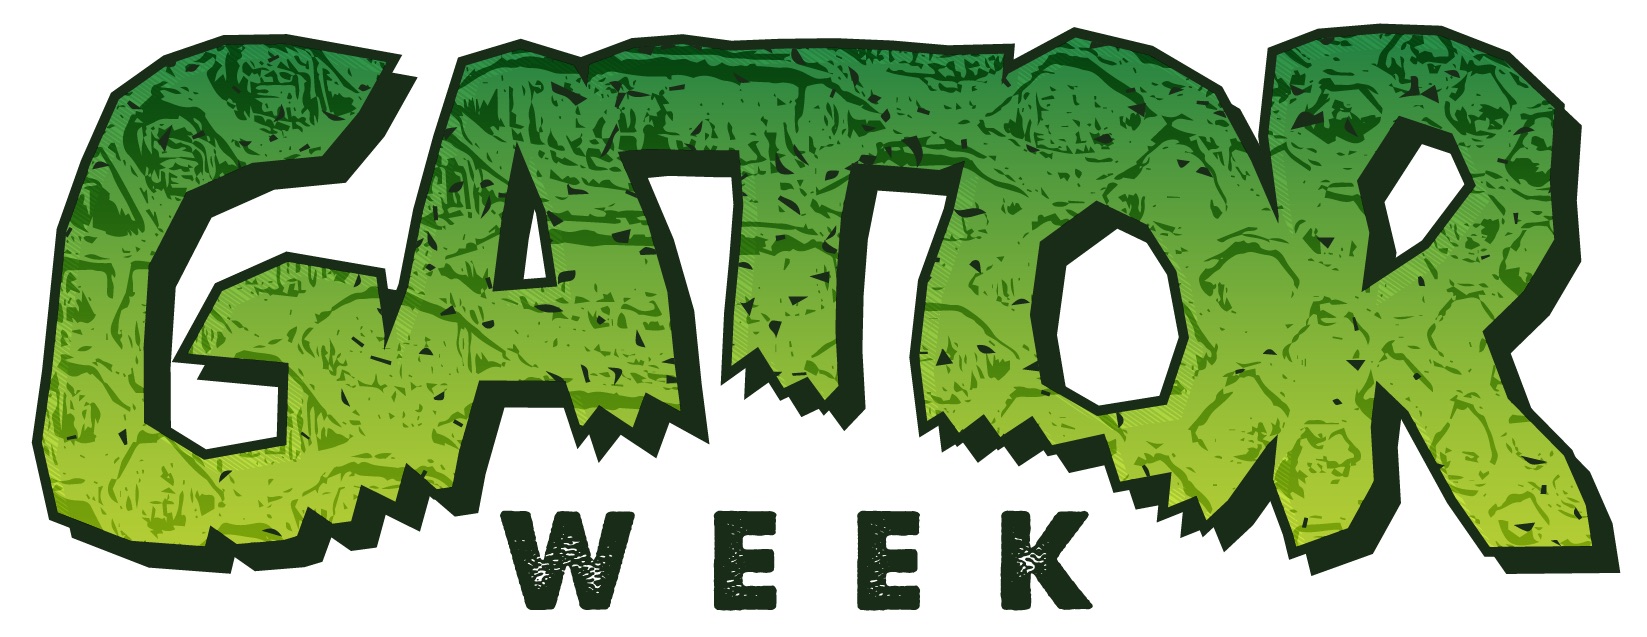 Gator week